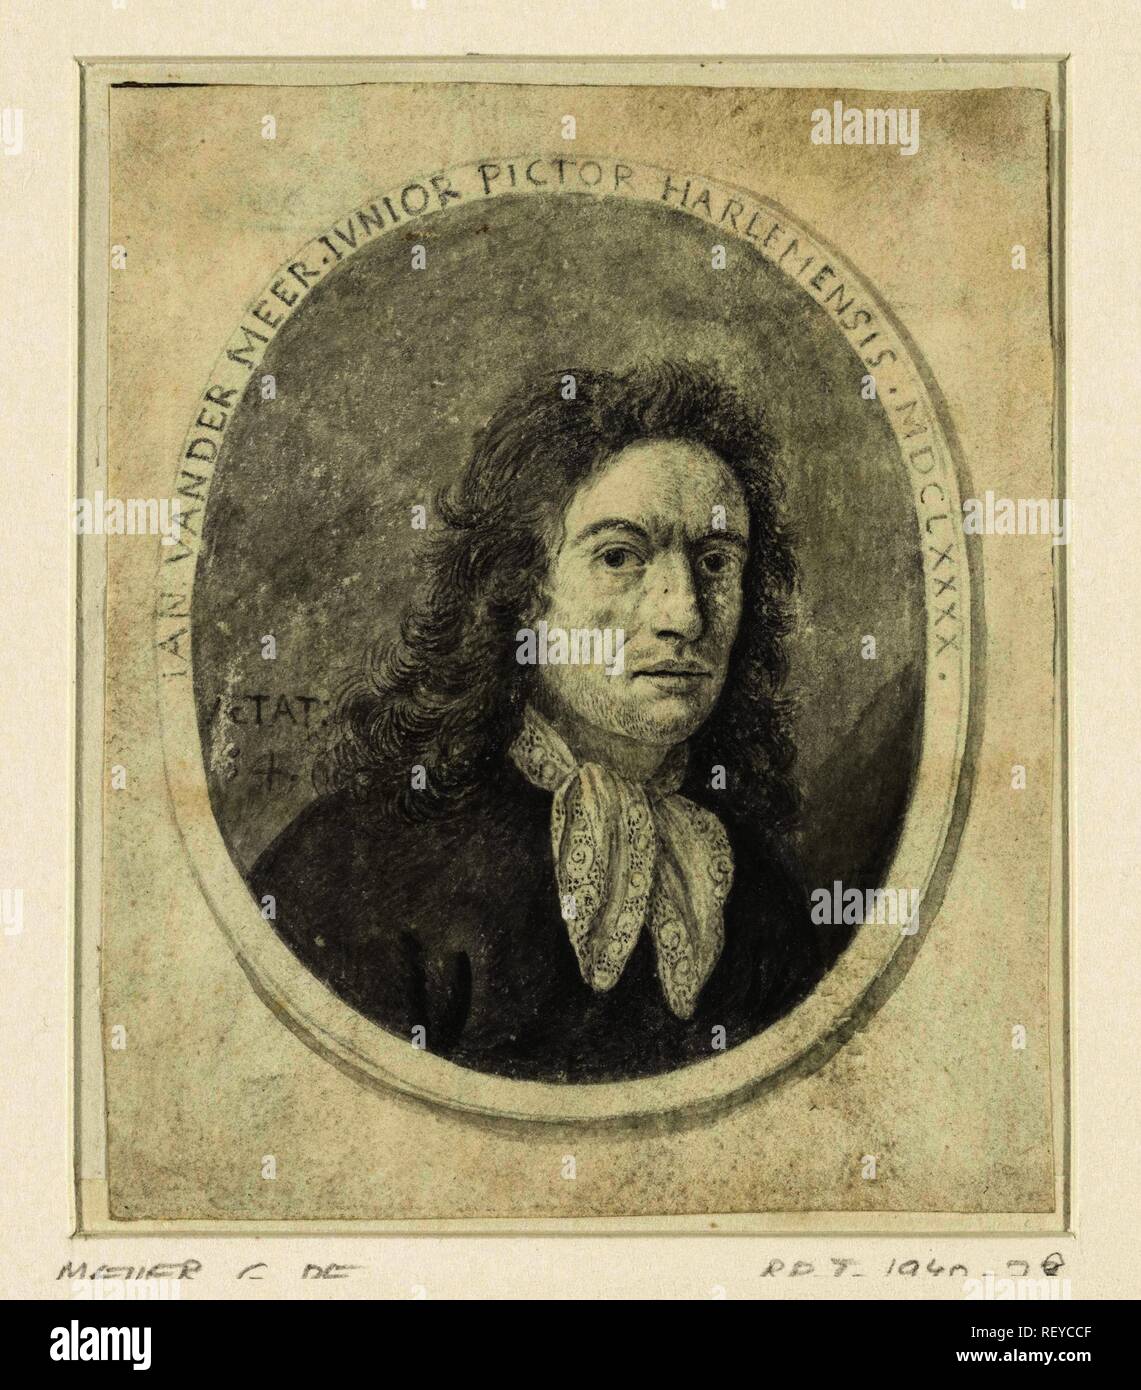 Ritratto di Johannes van der Meer il giovane. Relatore per parere: anonimo. Dating: 1690. Misurazioni: h 110 mm × W 91 mm. Museo: Rijksmuseum Amsterdam. Foto Stock